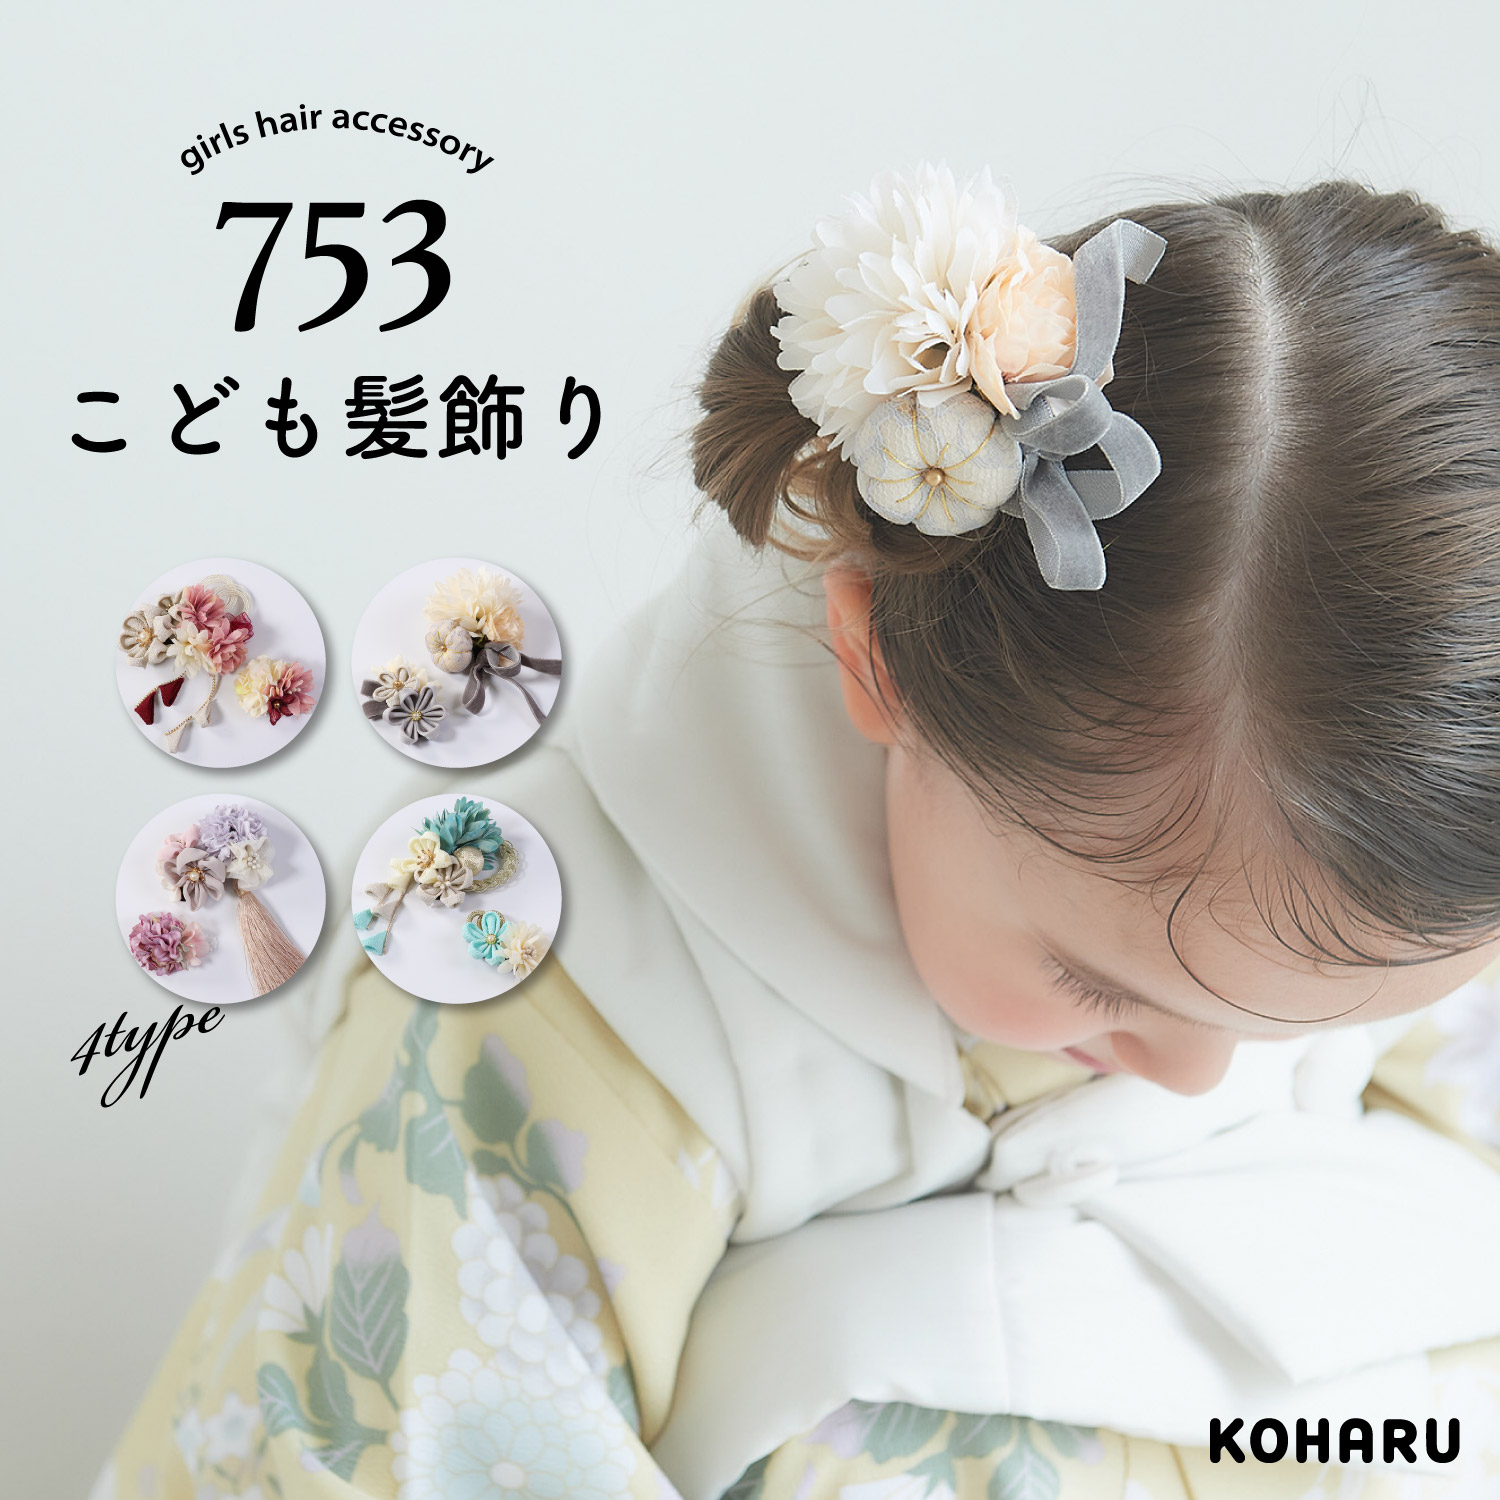 KOHARU 七五三 3歳女の子 スリーピン髪飾り